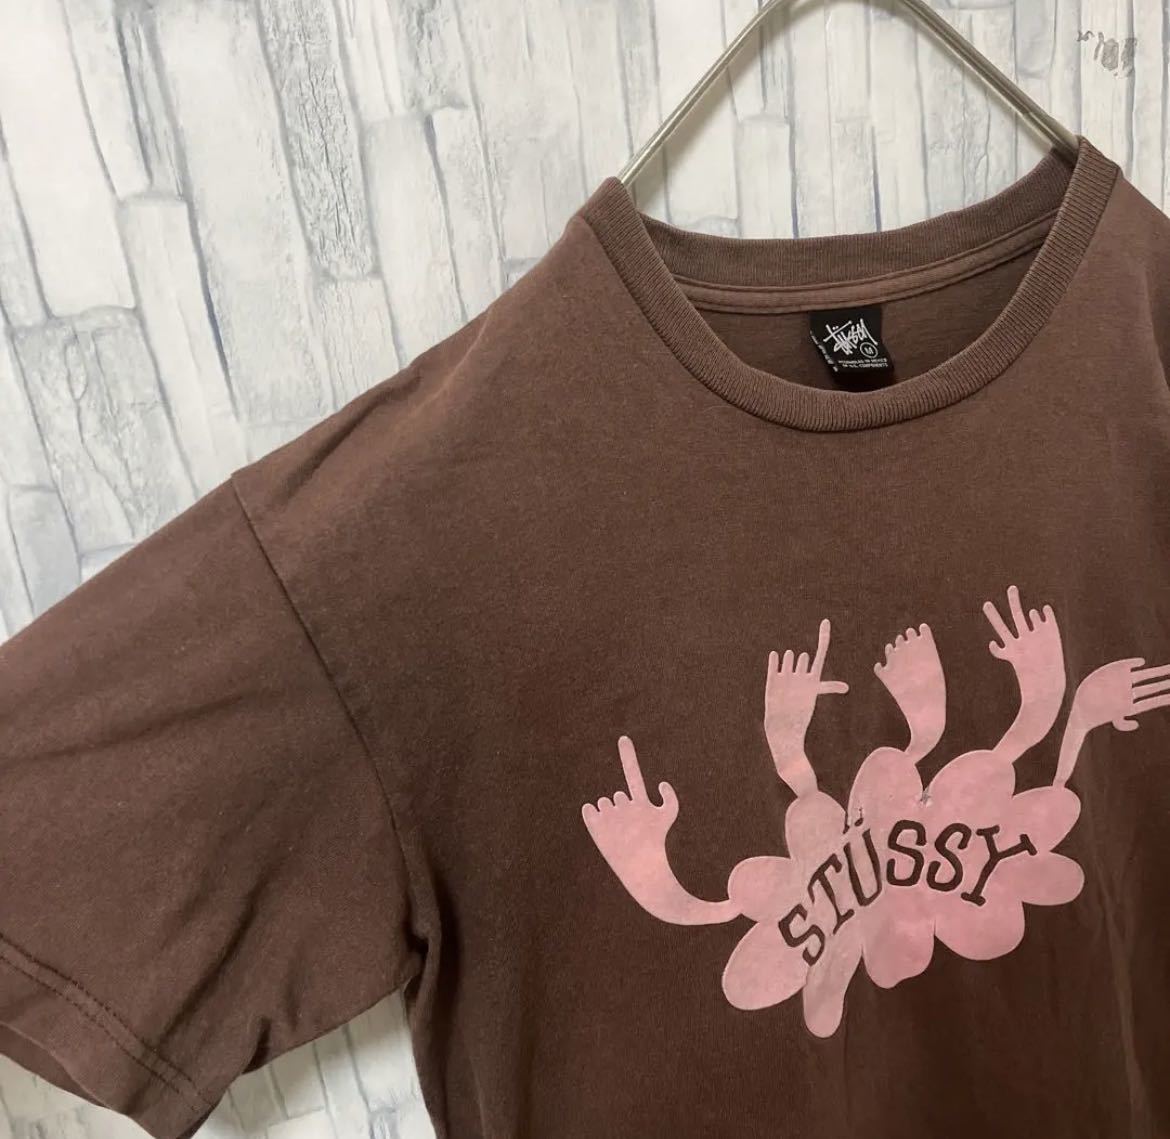 stussy ステューシー 半袖 Tシャツ デカロゴ ビッグロゴ サイズM ブラウン ハンド 送料無料